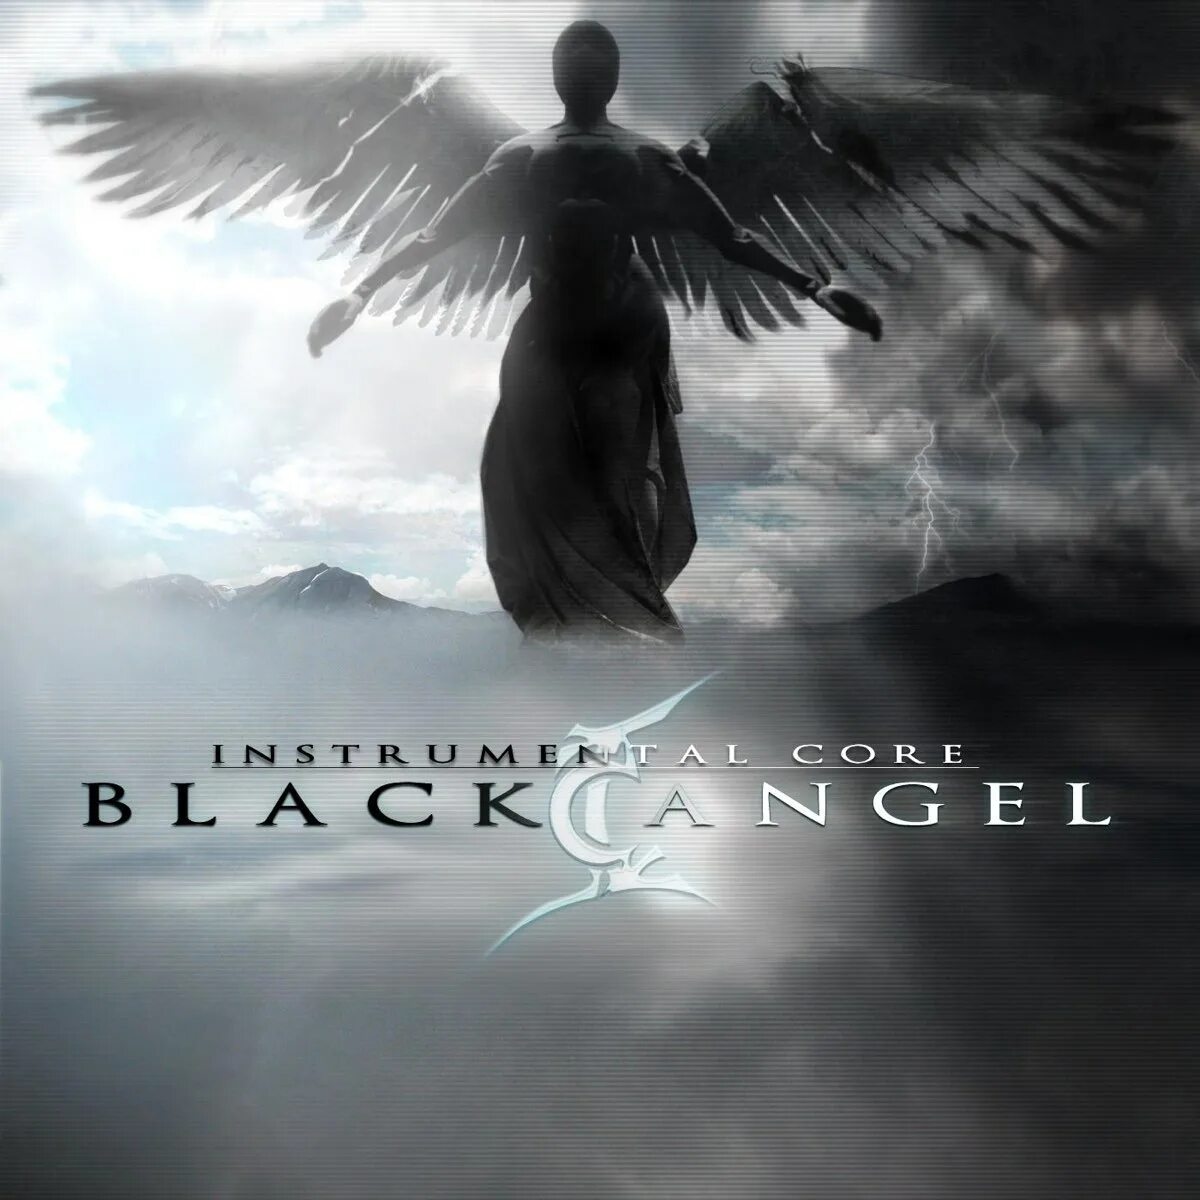 Папа песни ангел. Черный ангел. Альбом с ангелом на обложке. Instrumental Core. Темный ангел на обложку.